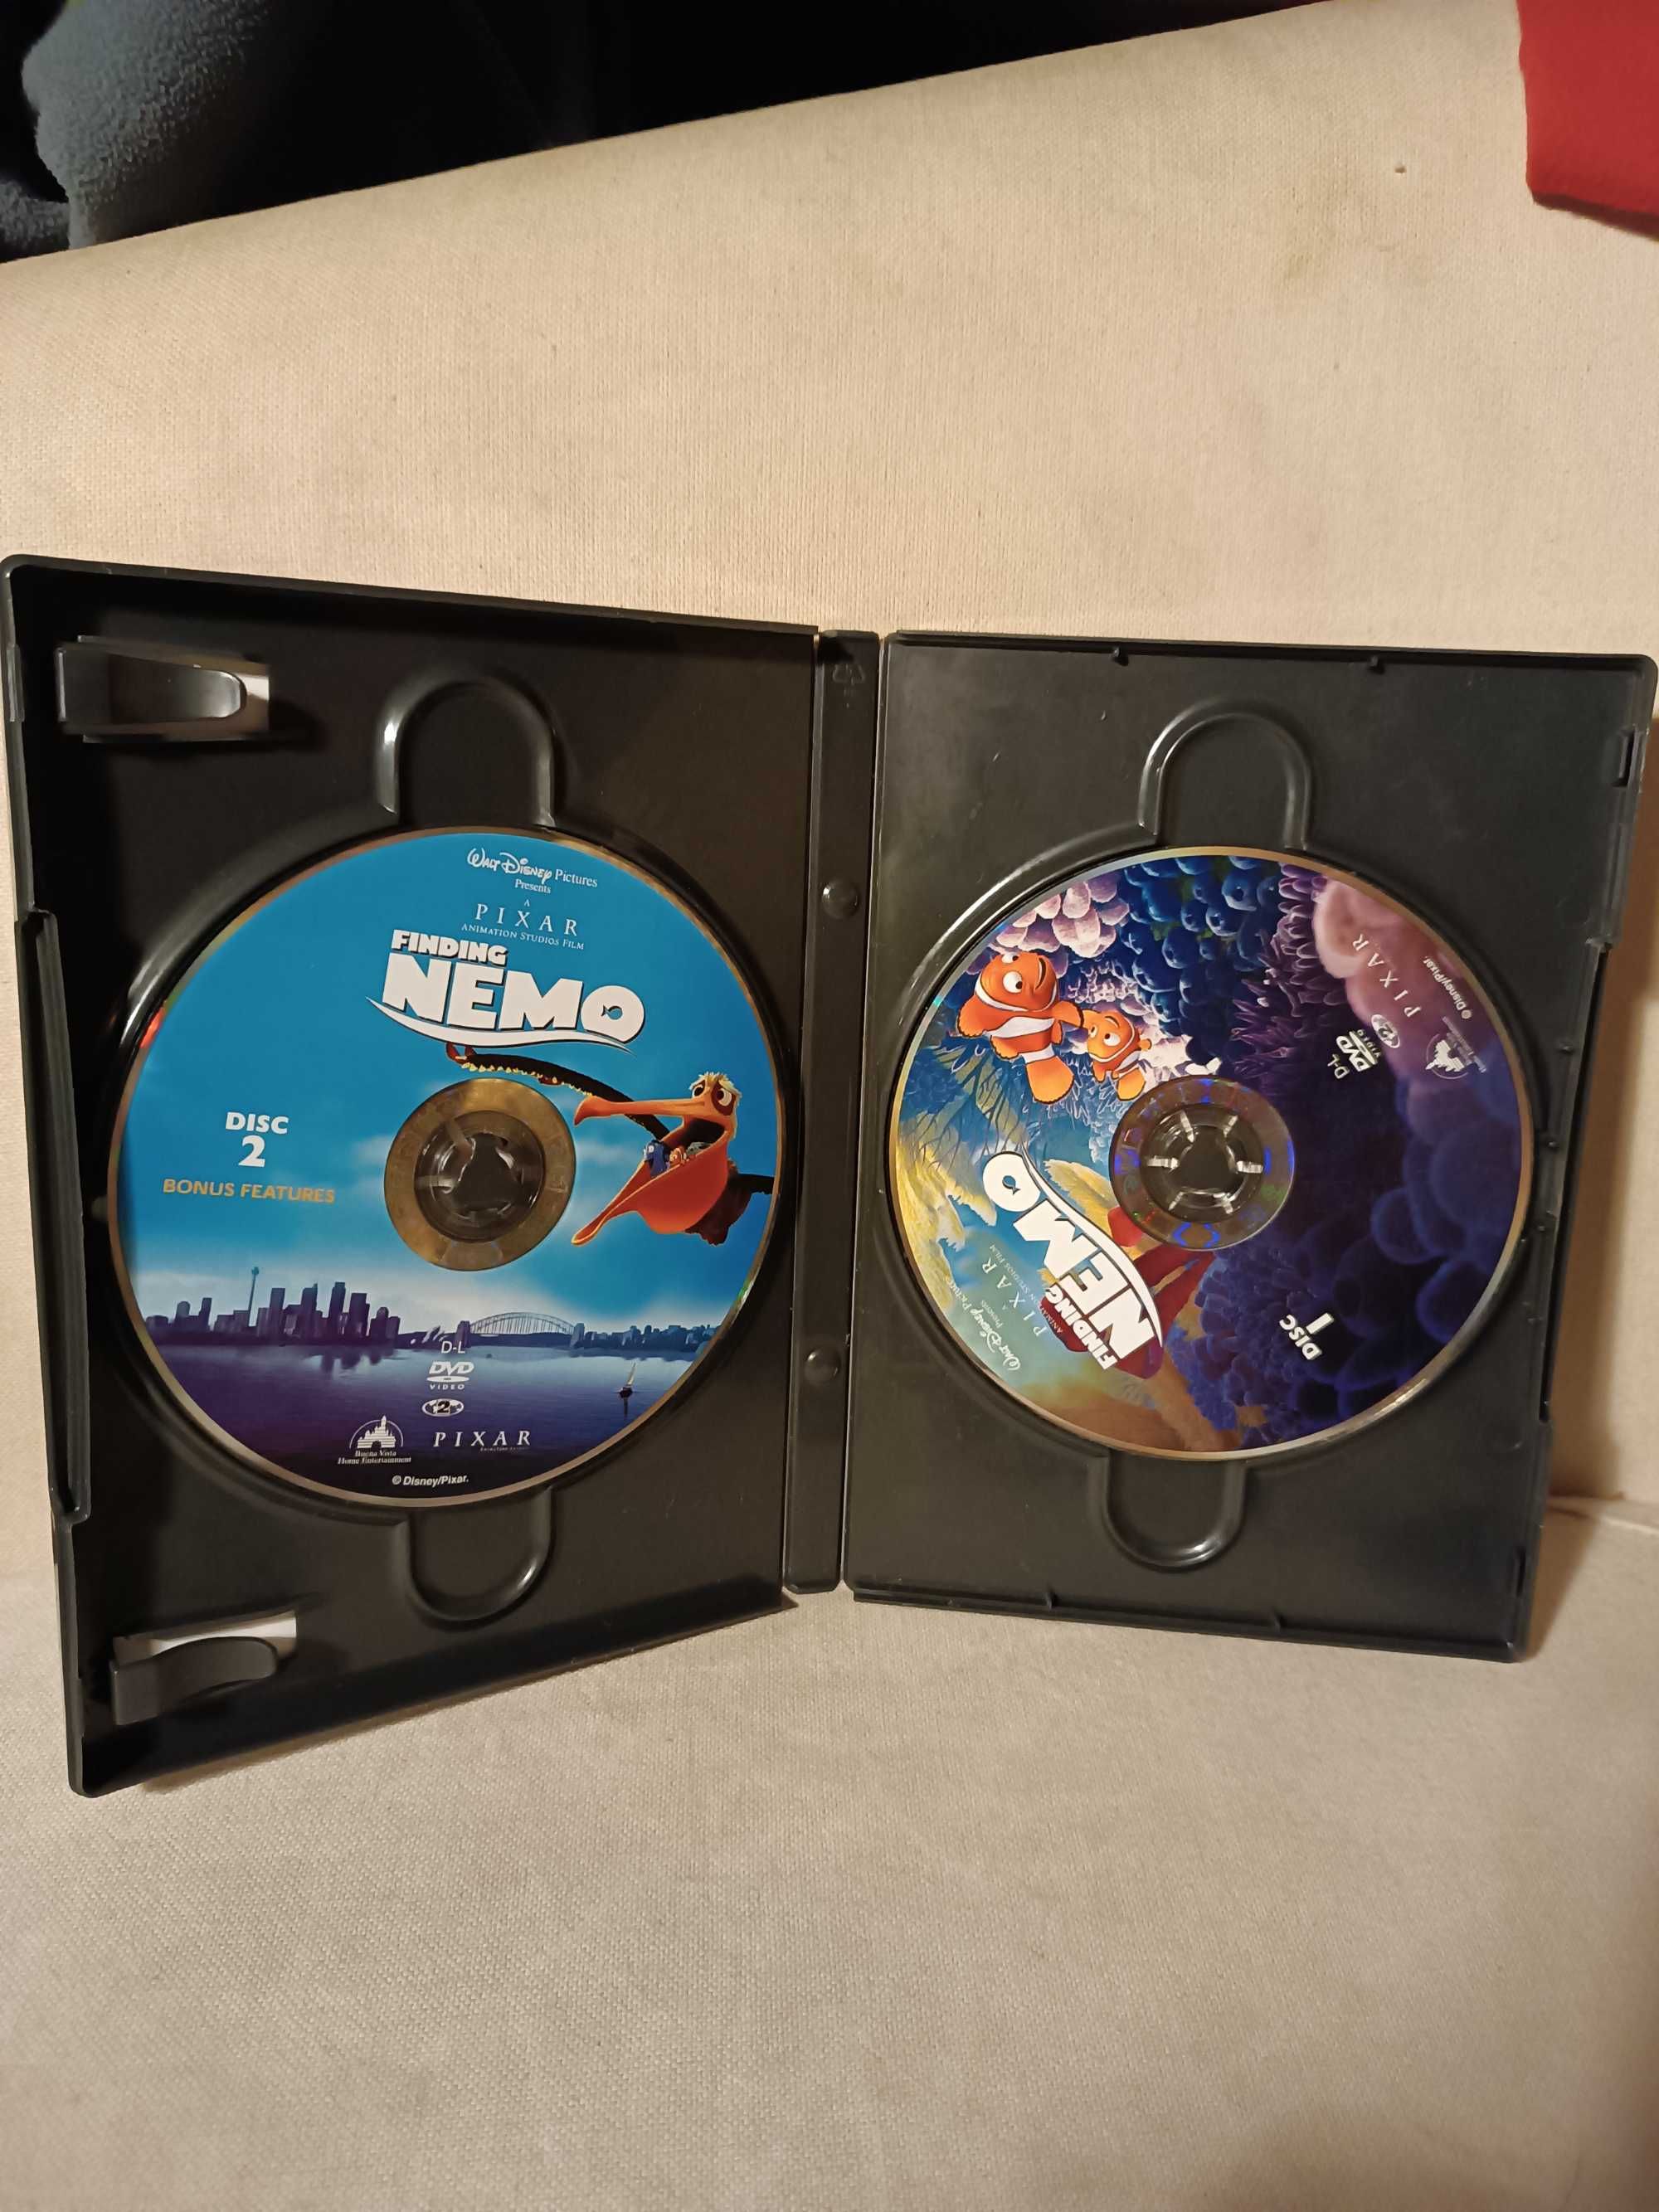 À procura de Nemo - DVD (edição colecionador)